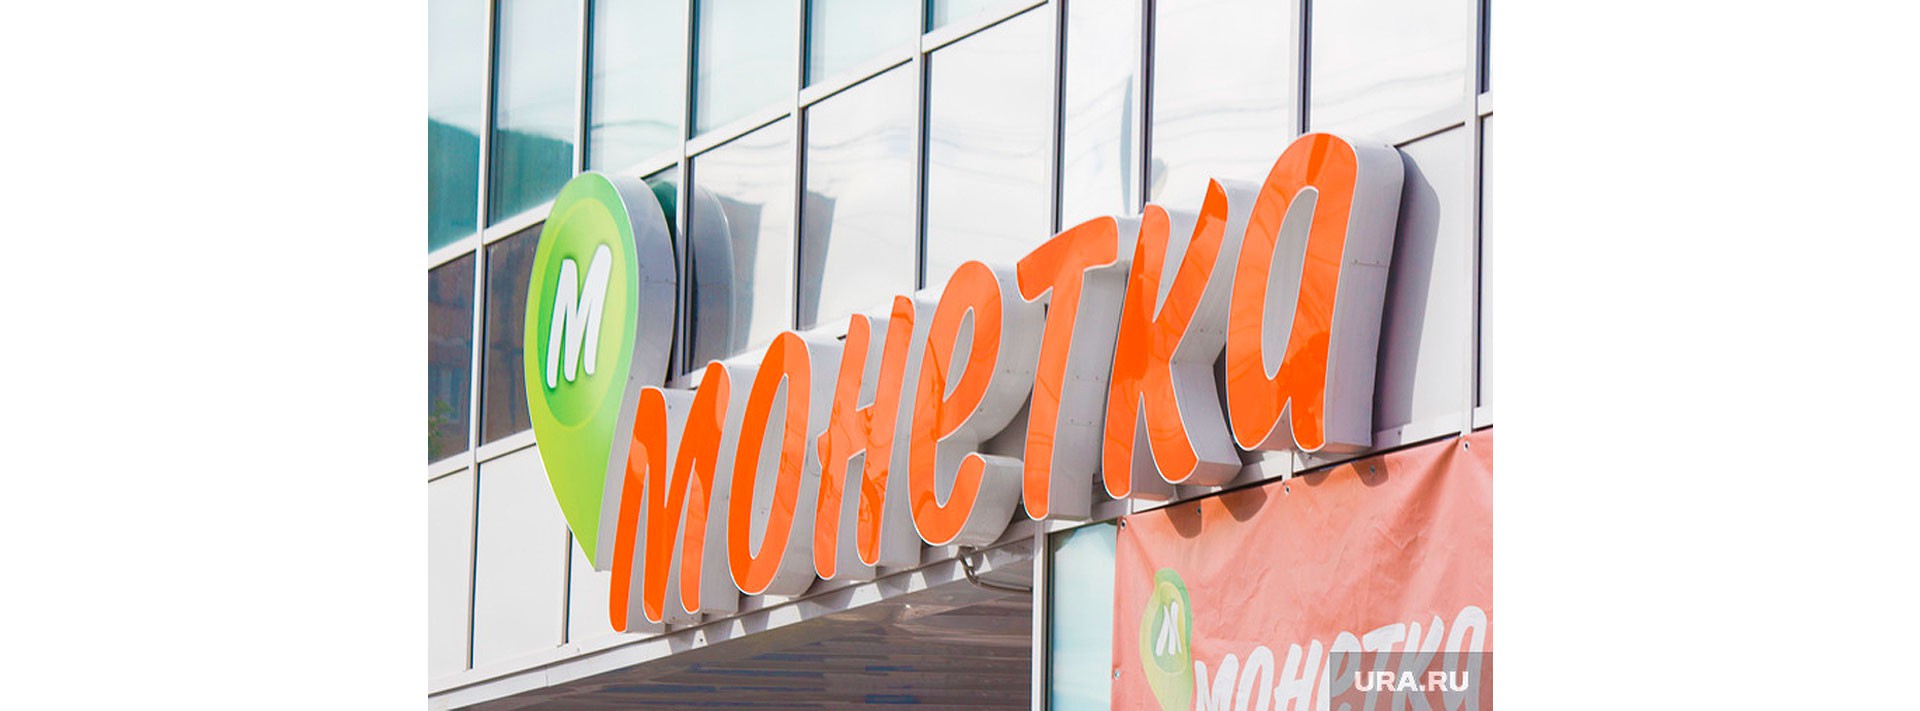 Monetka fascia brand identity signage for Russian conveniece supermarkets